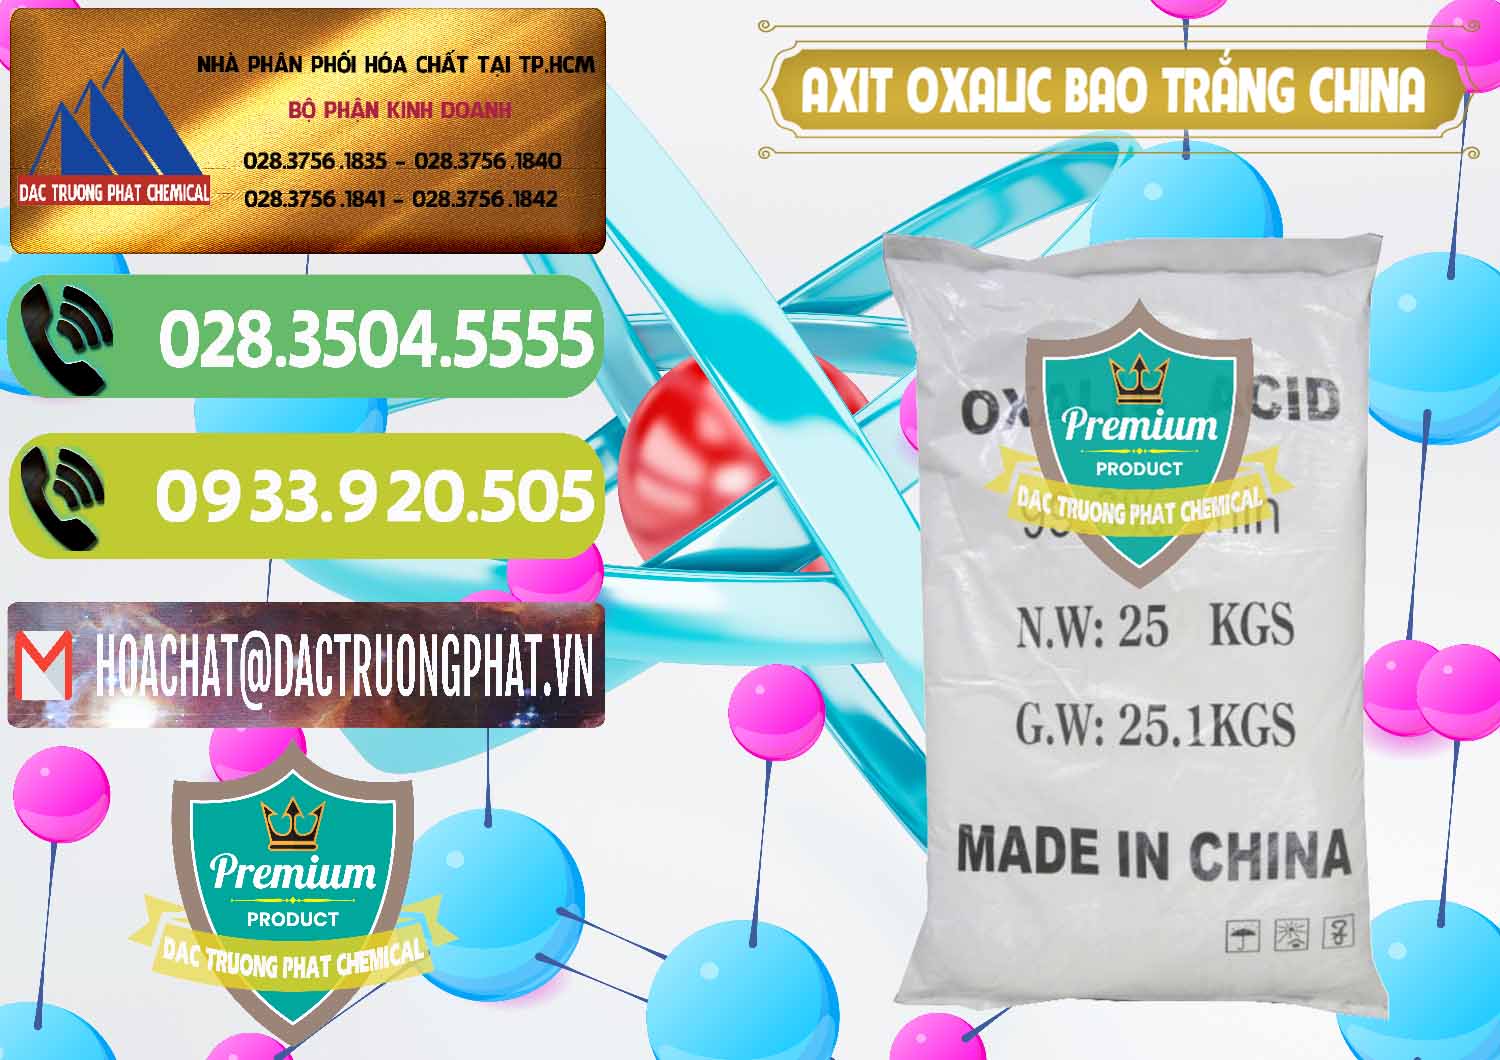 Bán & phân phối Acid Oxalic – Axit Oxalic 99.6% Bao Trắng Trung Quốc China - 0270 - Đơn vị cung cấp _ phân phối hóa chất tại TP.HCM - hoachatmientay.vn